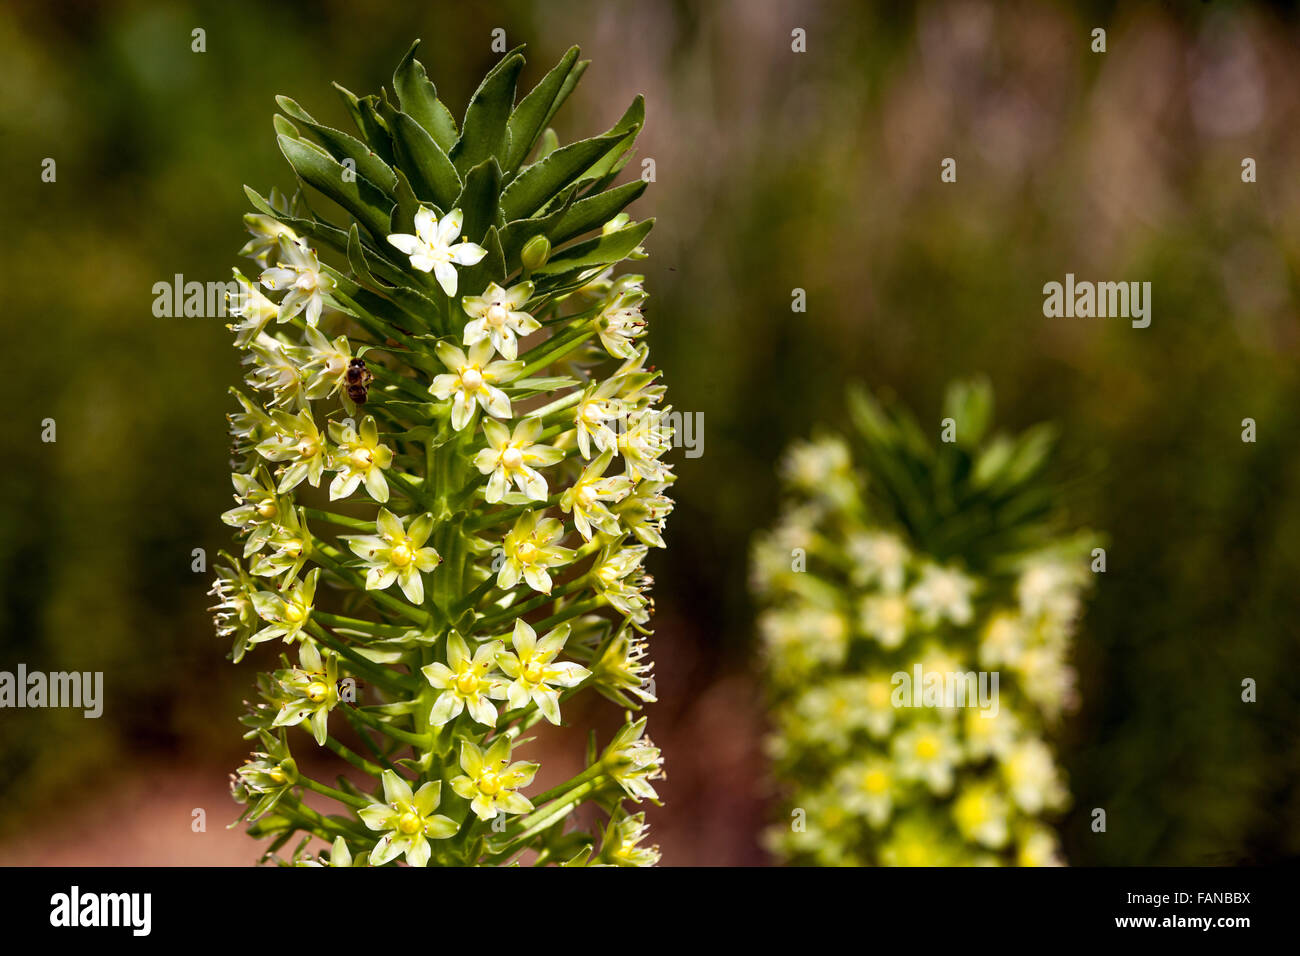 Eucomis pallidiflora Pole - Evansii, Giant Pineapple Lily flowers Stock Photo